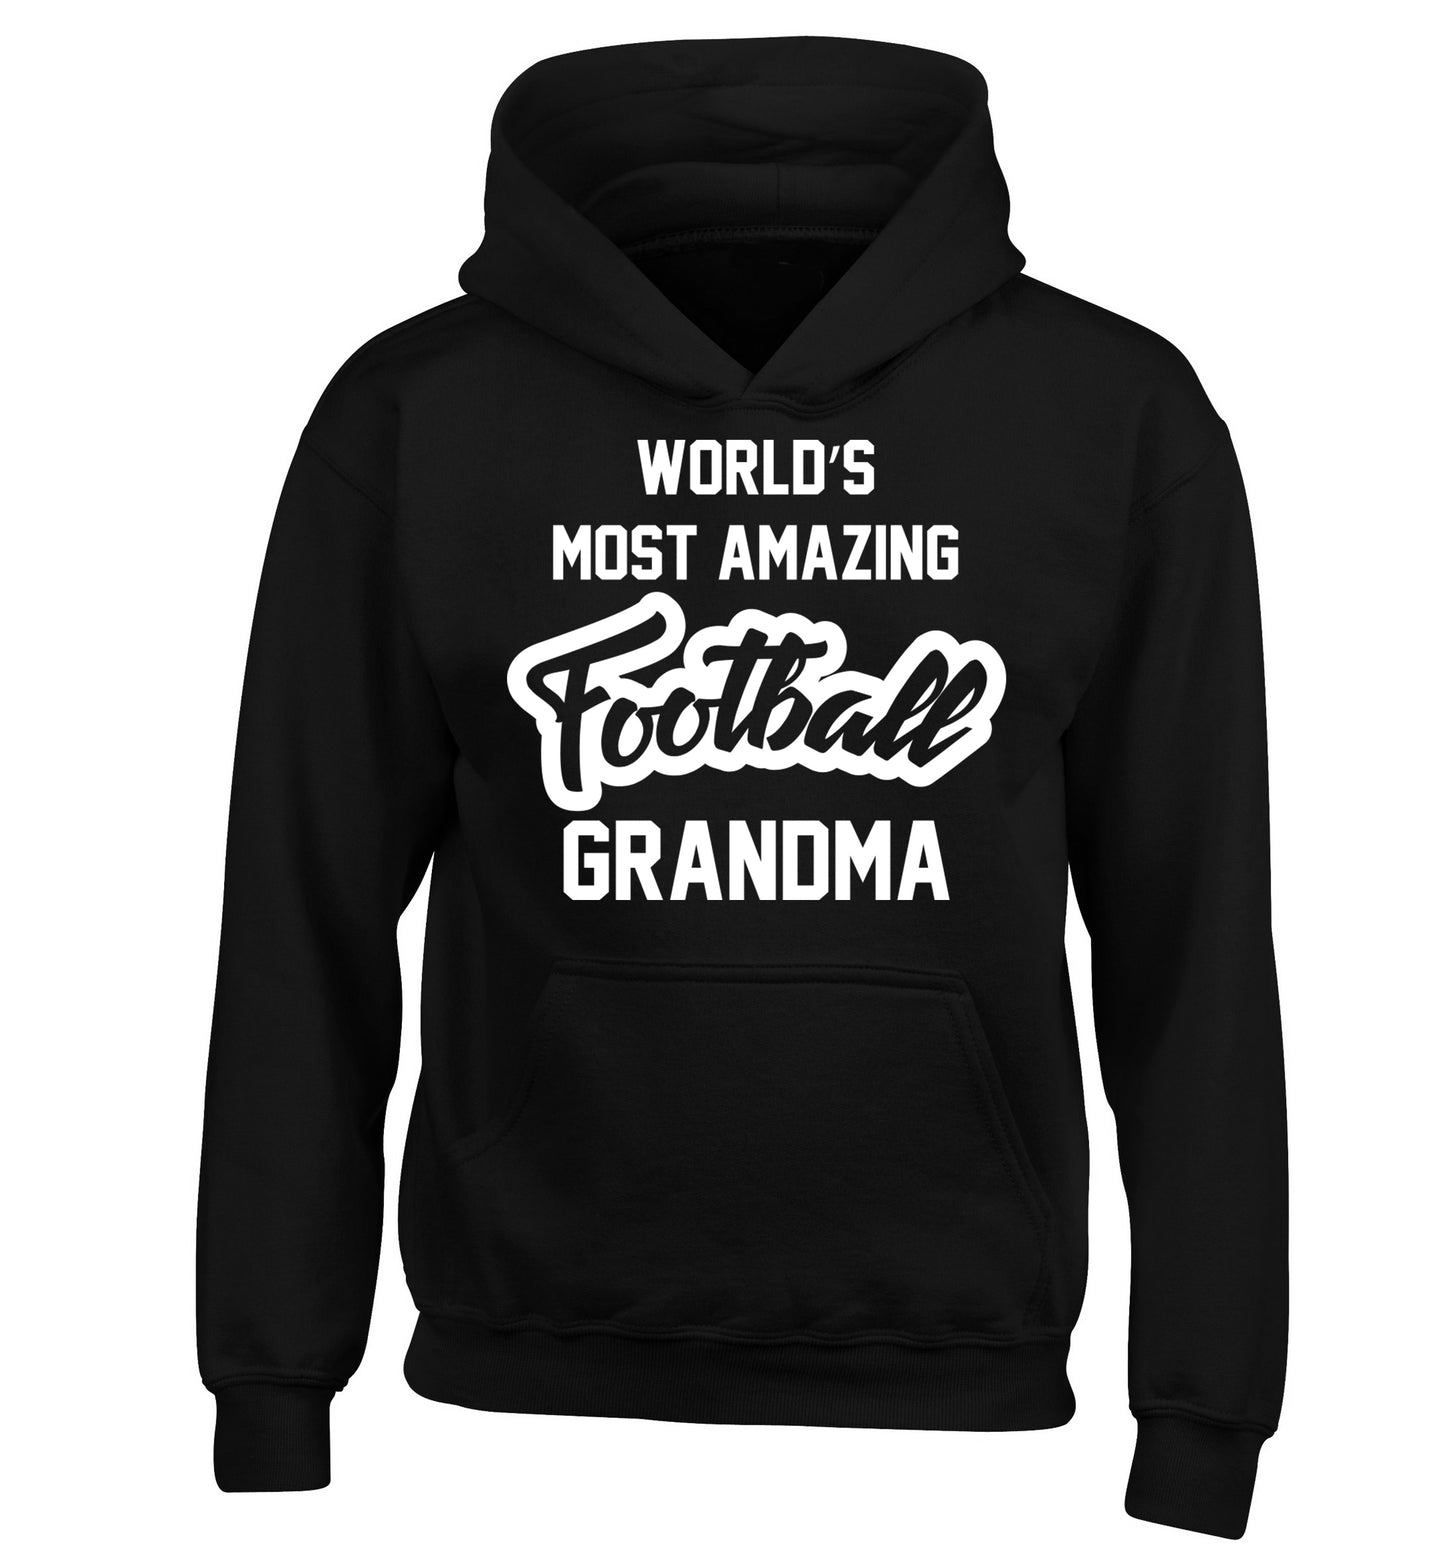 Worlds most amazing football grandma children's black hoodie 12-14 Years